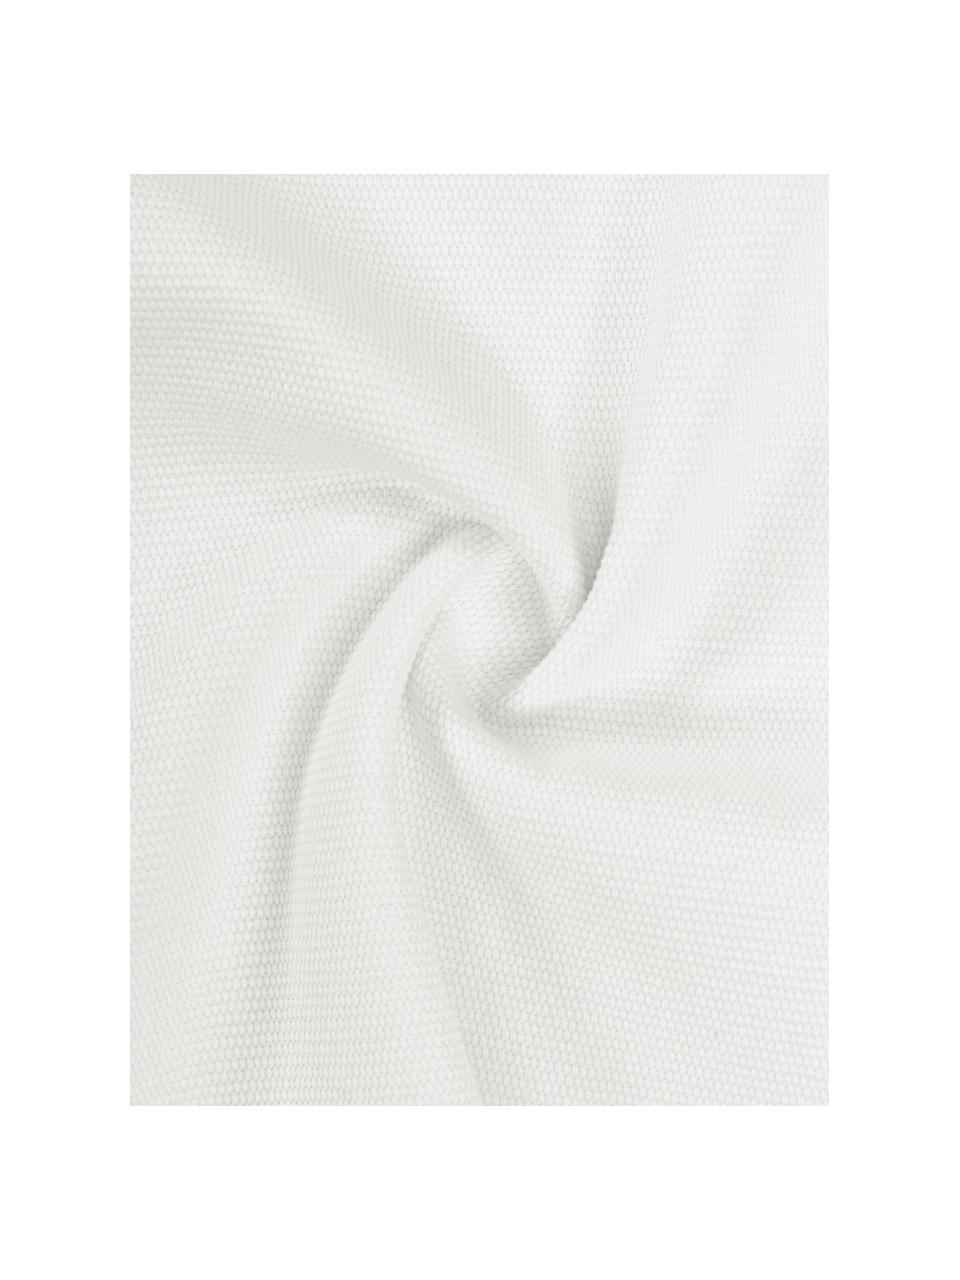 Poszewka na poduszkę z bawełny Mads, 100% bawełna, Beżowy, S 30 x D 50 cm